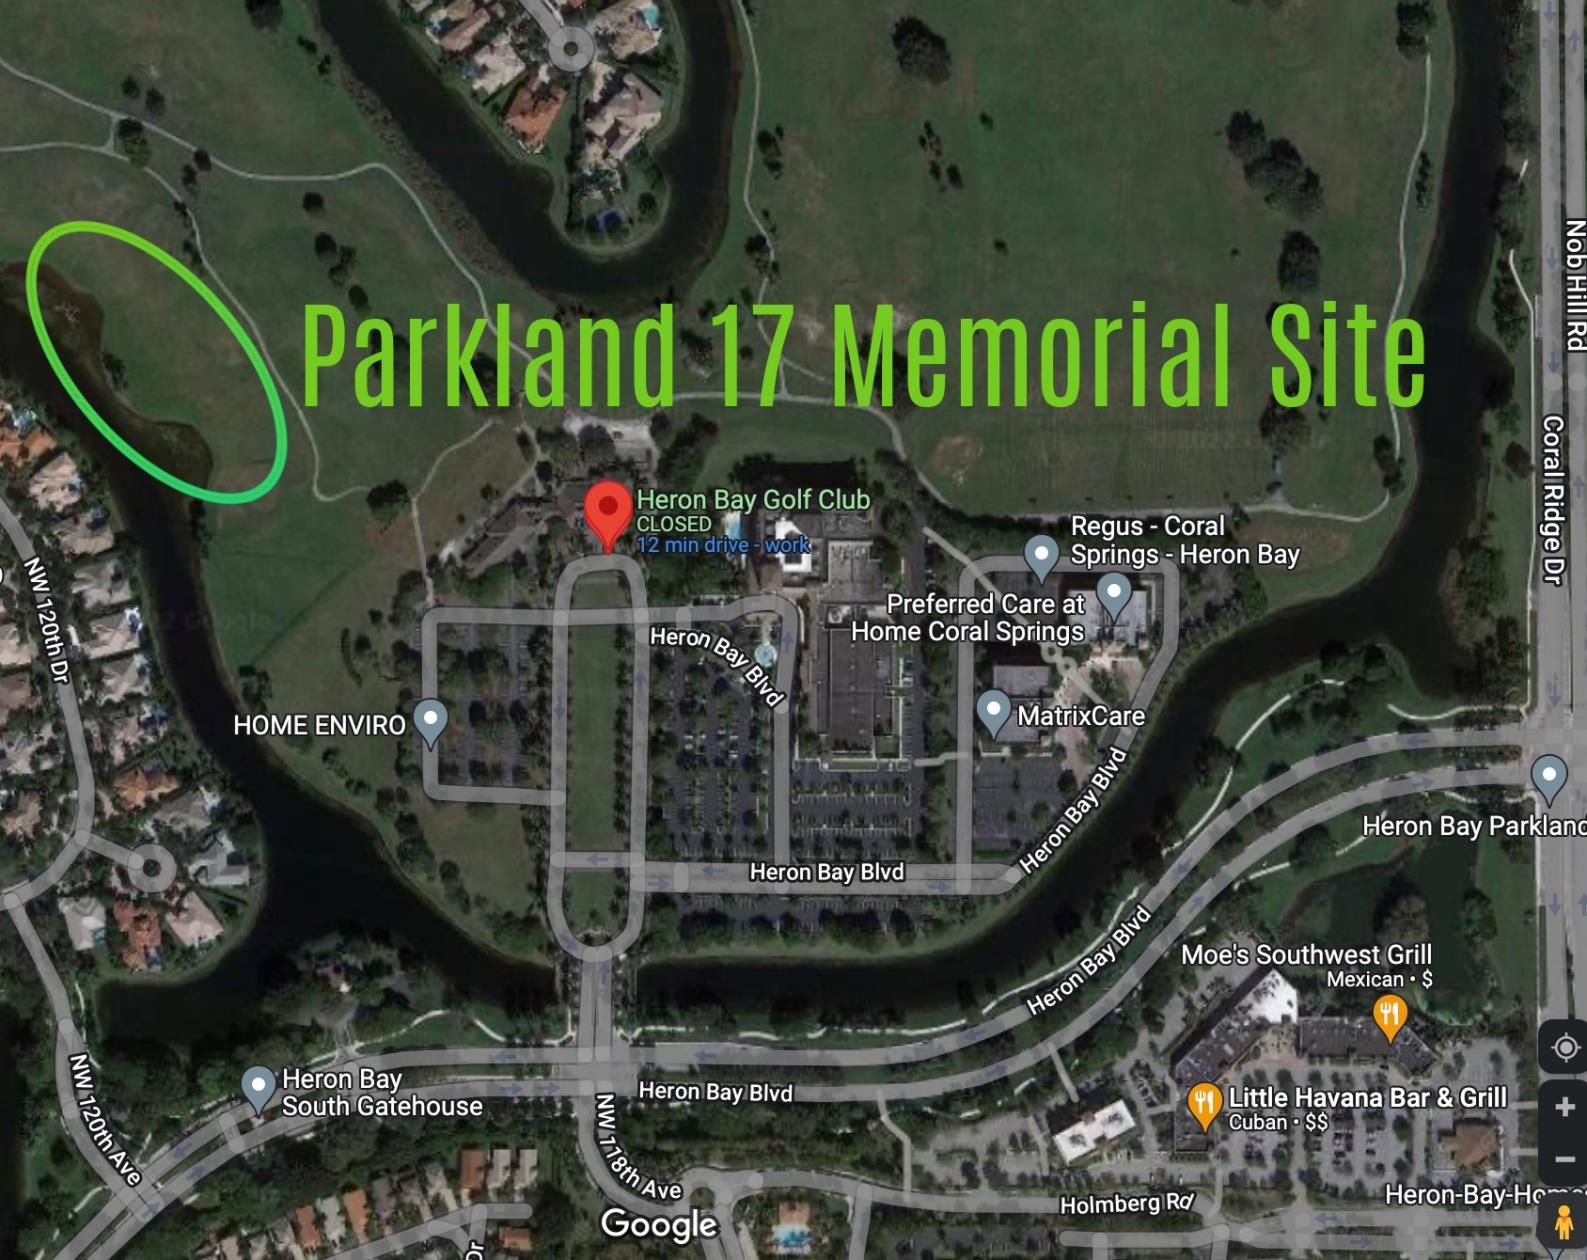 Parkland 17 Memorial National Design Competition, Parkland, Florida, USA, 2023